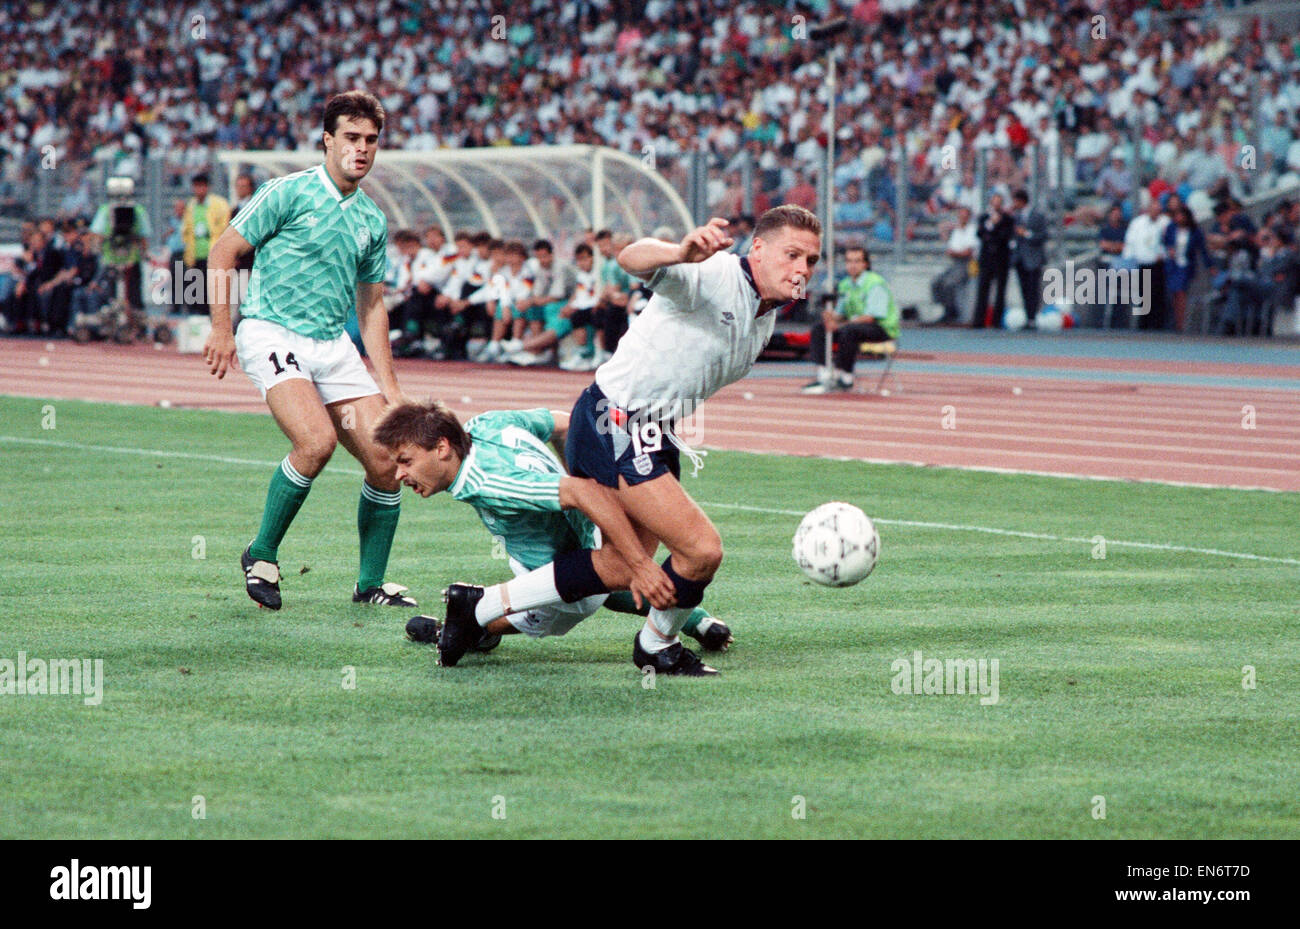 Coppa del Mondo di Calcio 1990 Semi finale corrisponde lo Stadio delle Alpi  di Torino, Italia. Germania Ovest 1 v Inghilterra 1 (Germania Ovest ha  vinto su sanzioni). L'Inghilterra del Paul Gascoigne